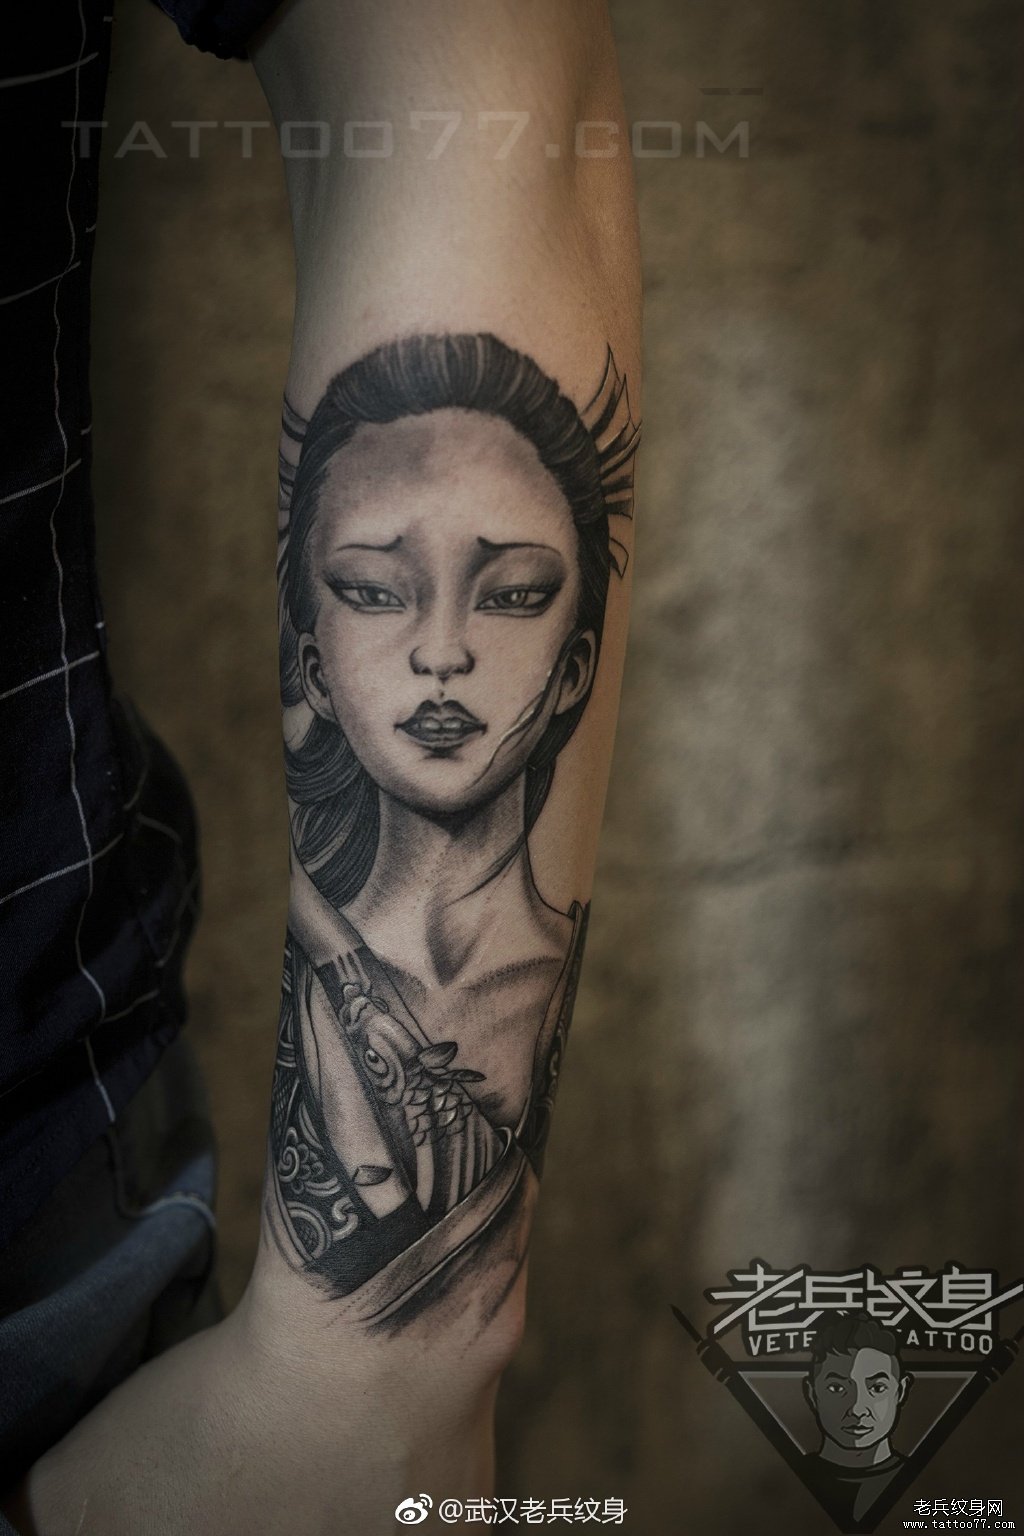 小手臂艺妓纹身美女纹身图案作品